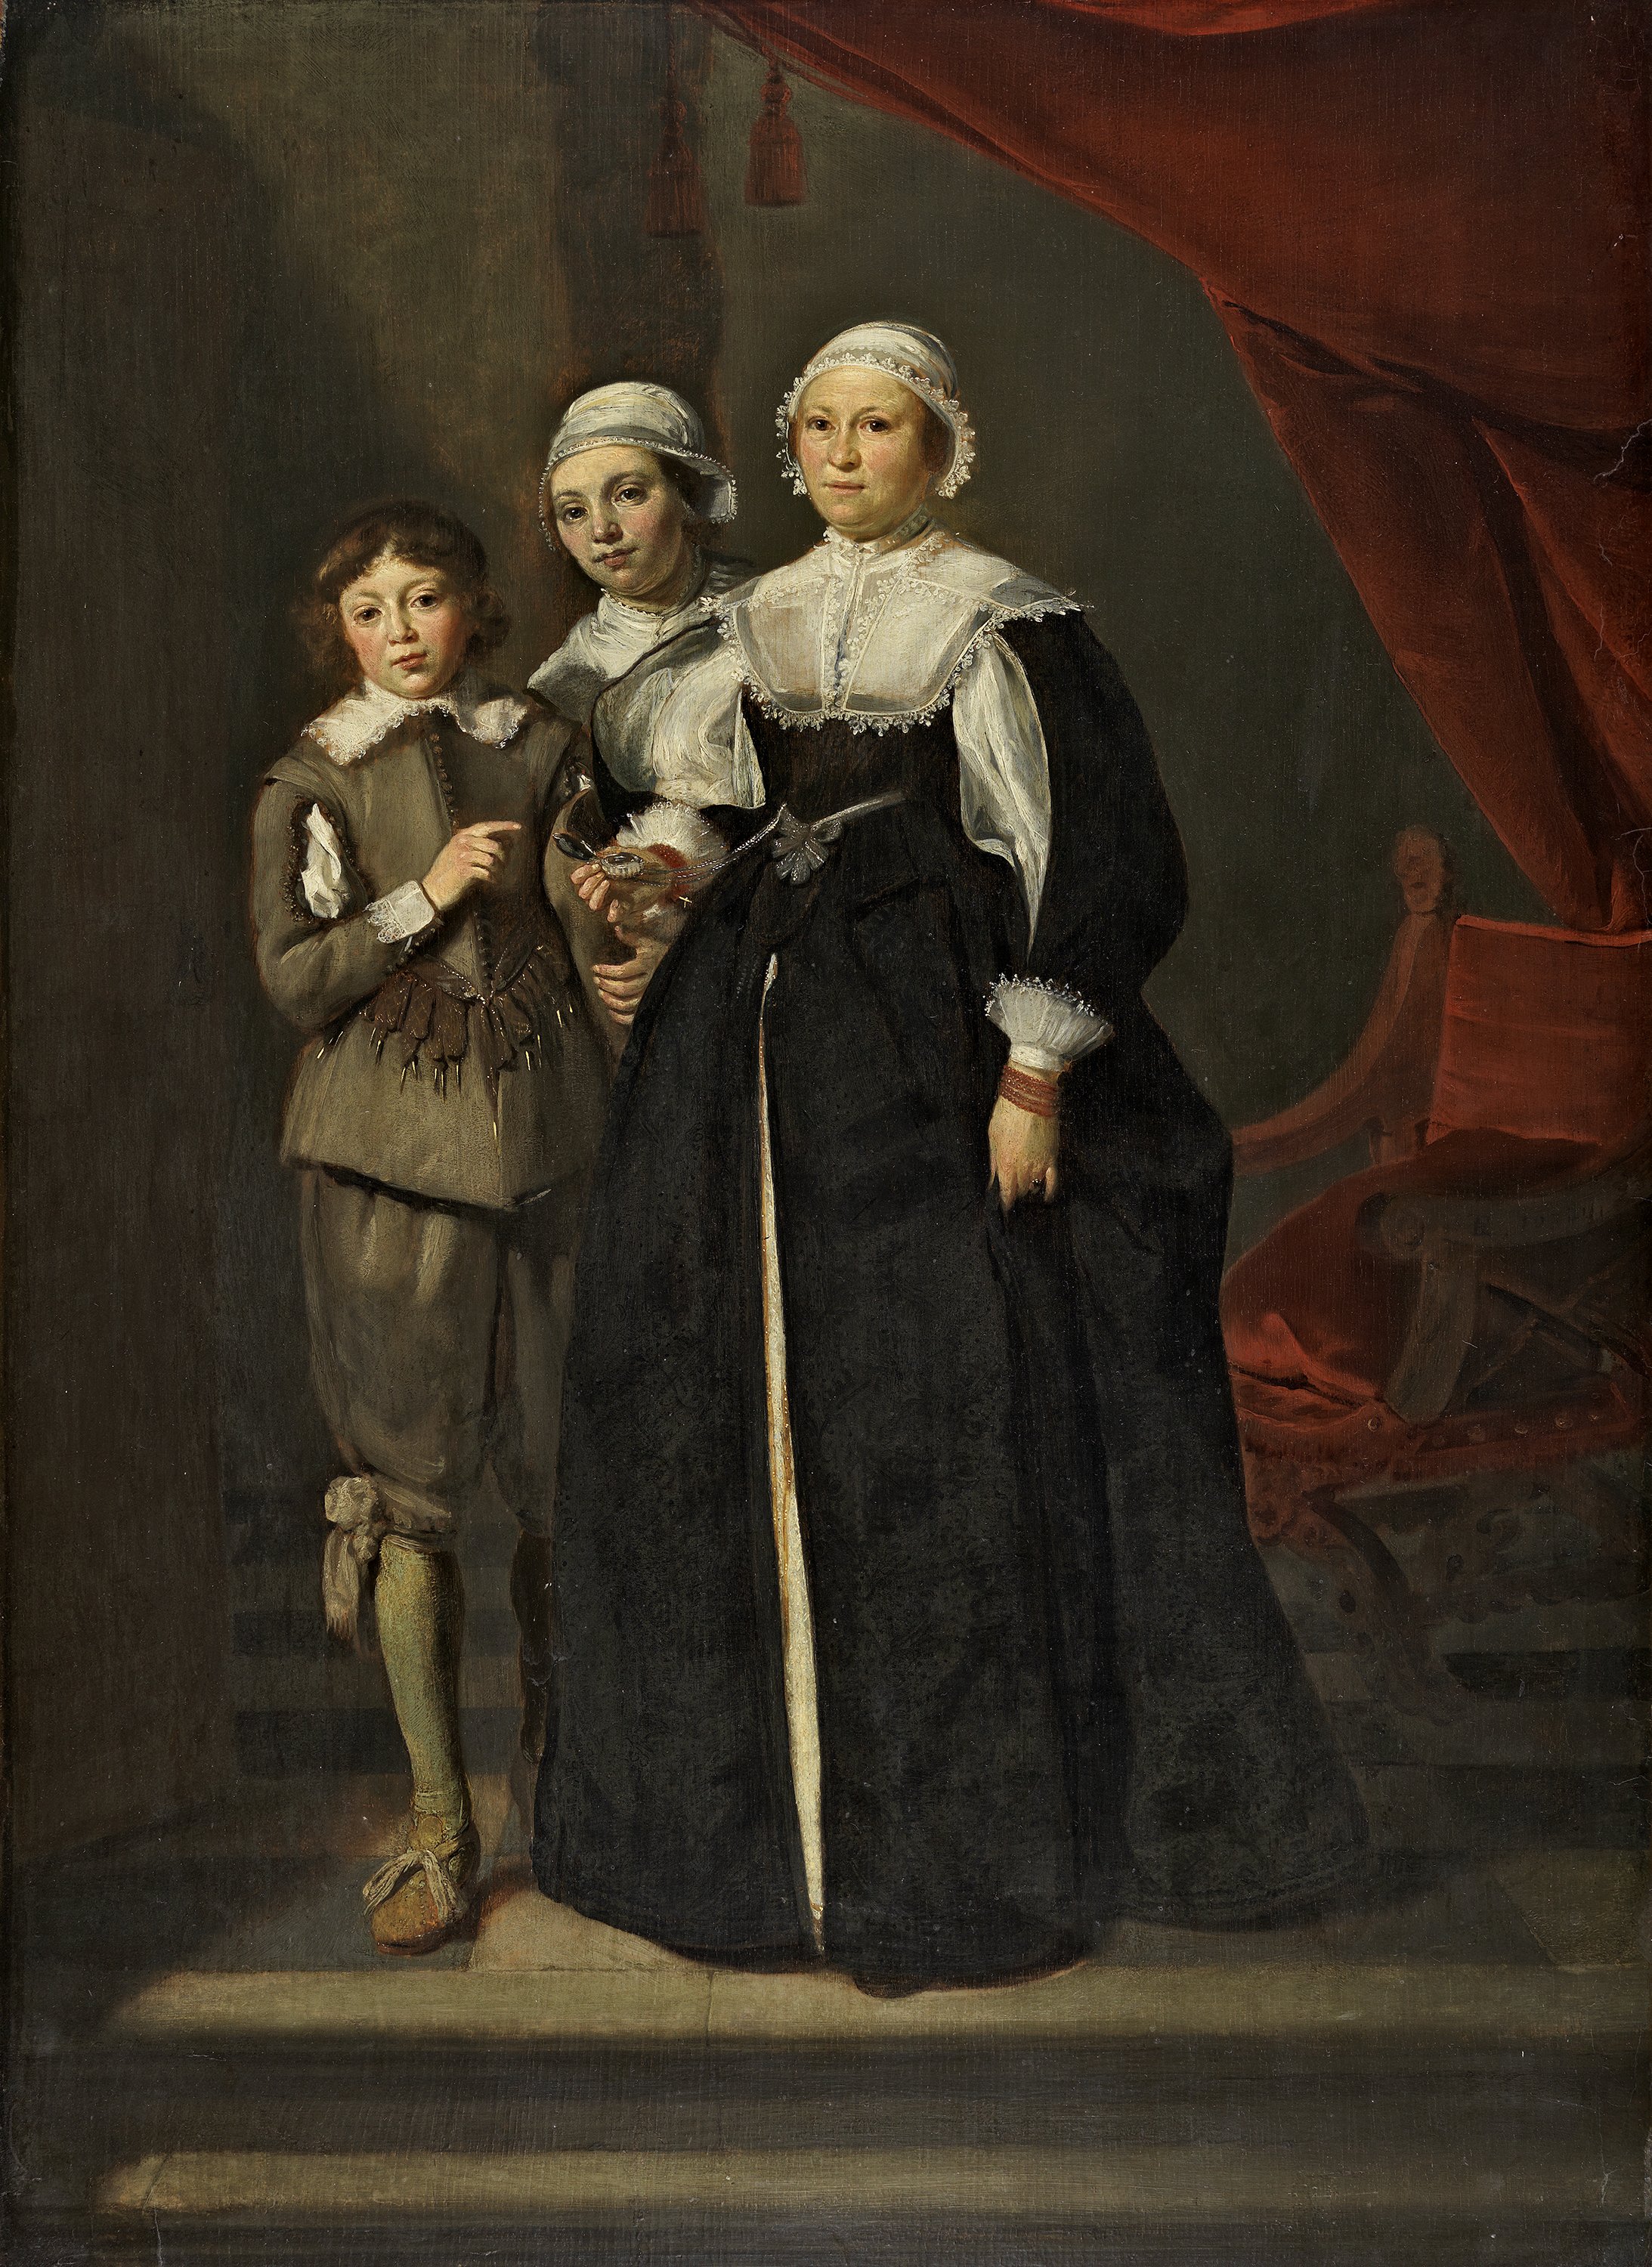 Portrait of Two Women and a Boy. Retrato de dos mujeres y un niño, 1632